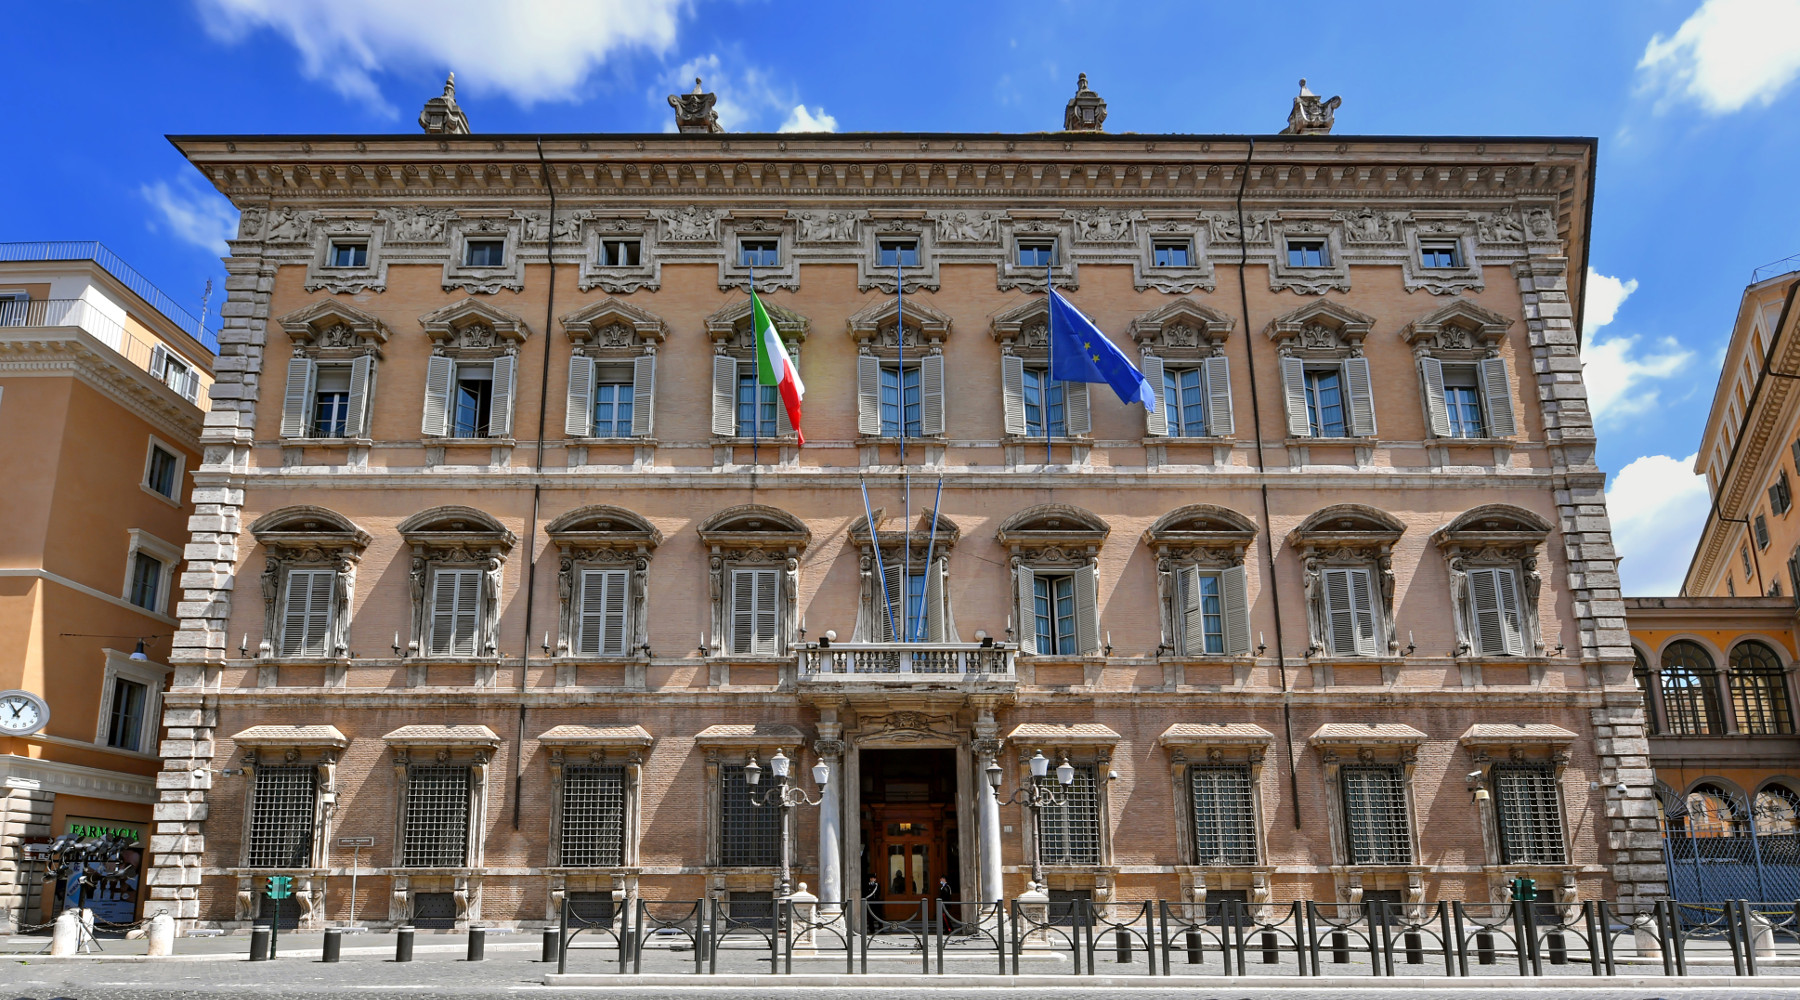 Sospensione della caccia in Lombardia, interrogazione in Senato: facciata di palazzo Madama